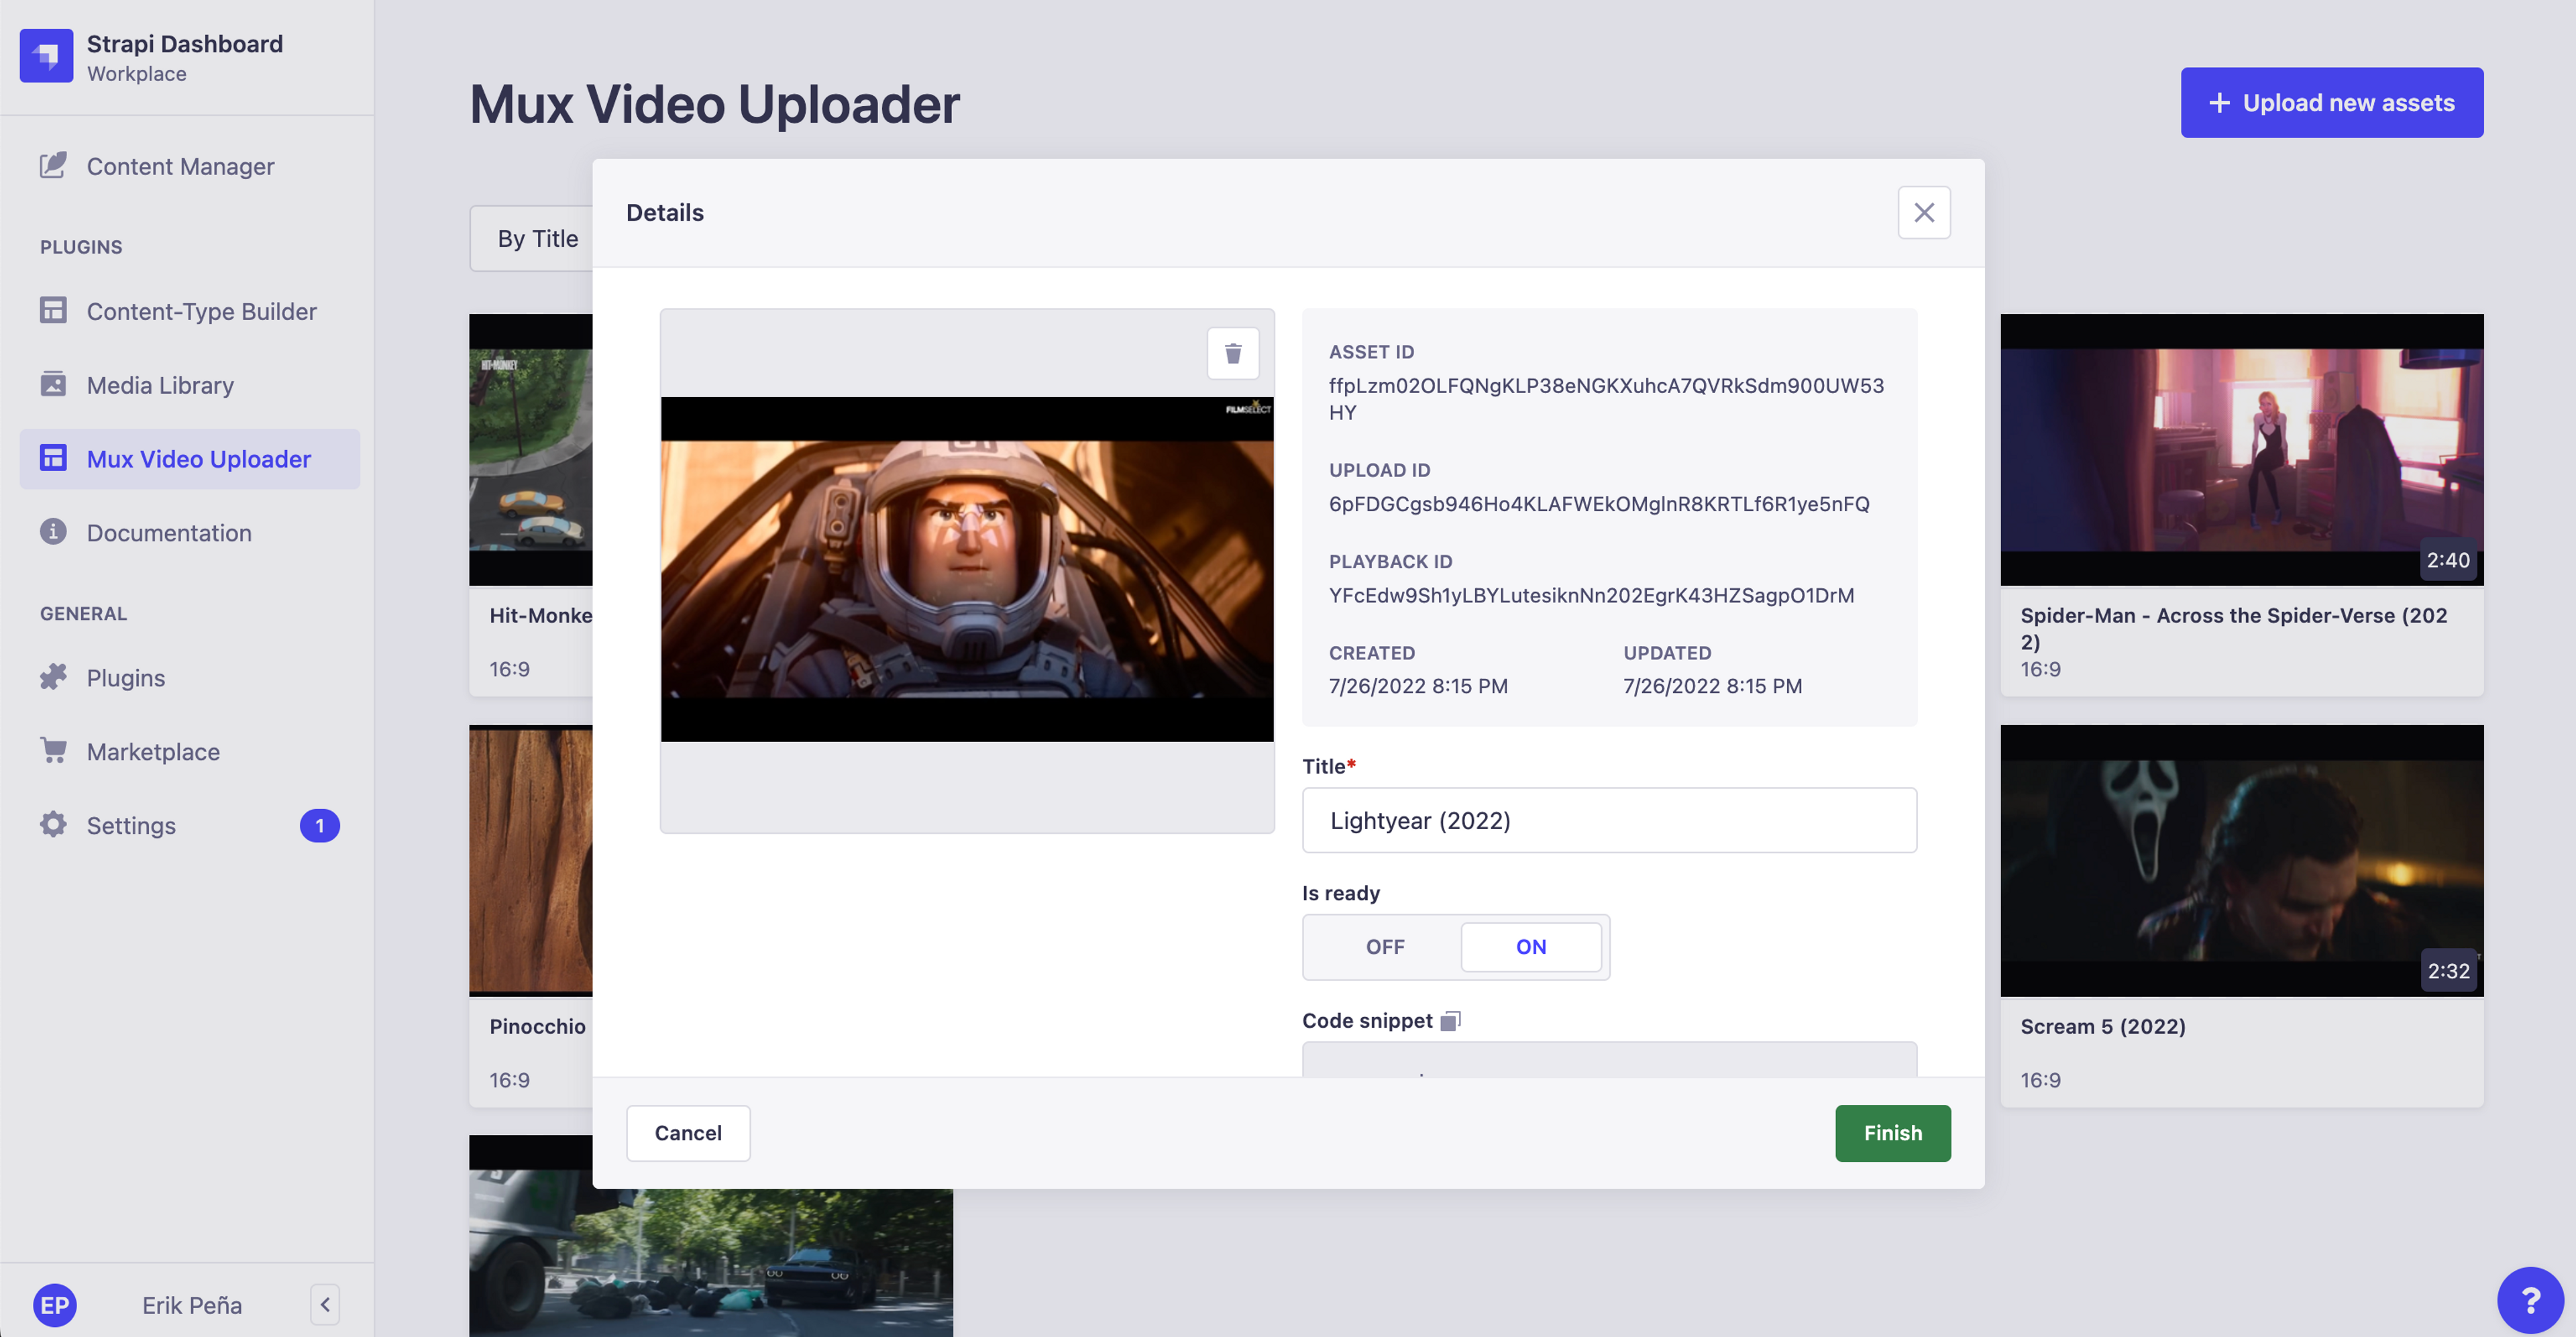 Mux Video Uploader - Asset Details Modal